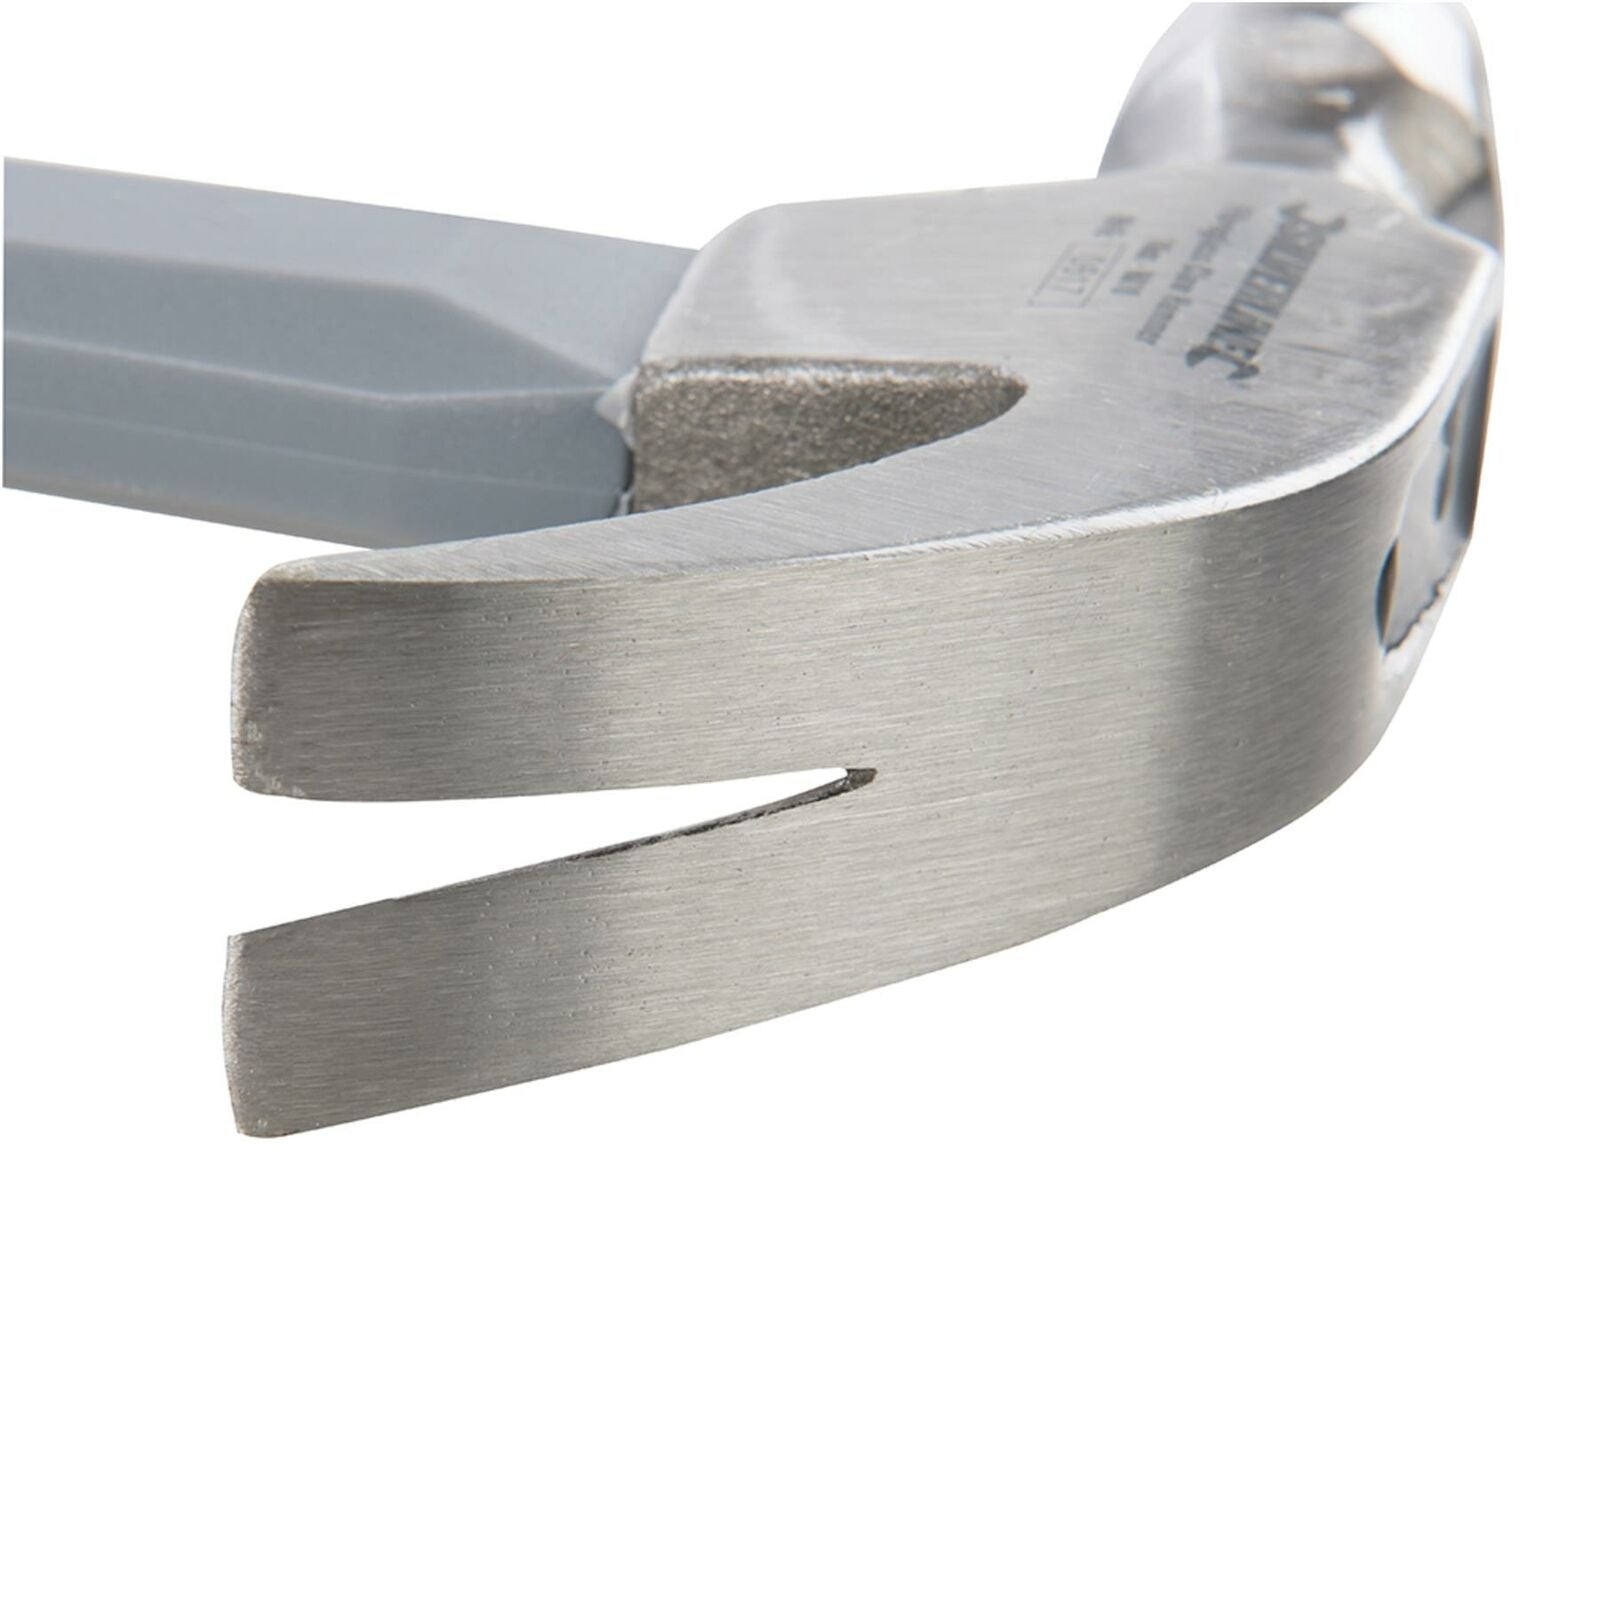 Silverline 16oz Claw Hammer Fibreglass Rubber Grip Handel Hardened Steel Head